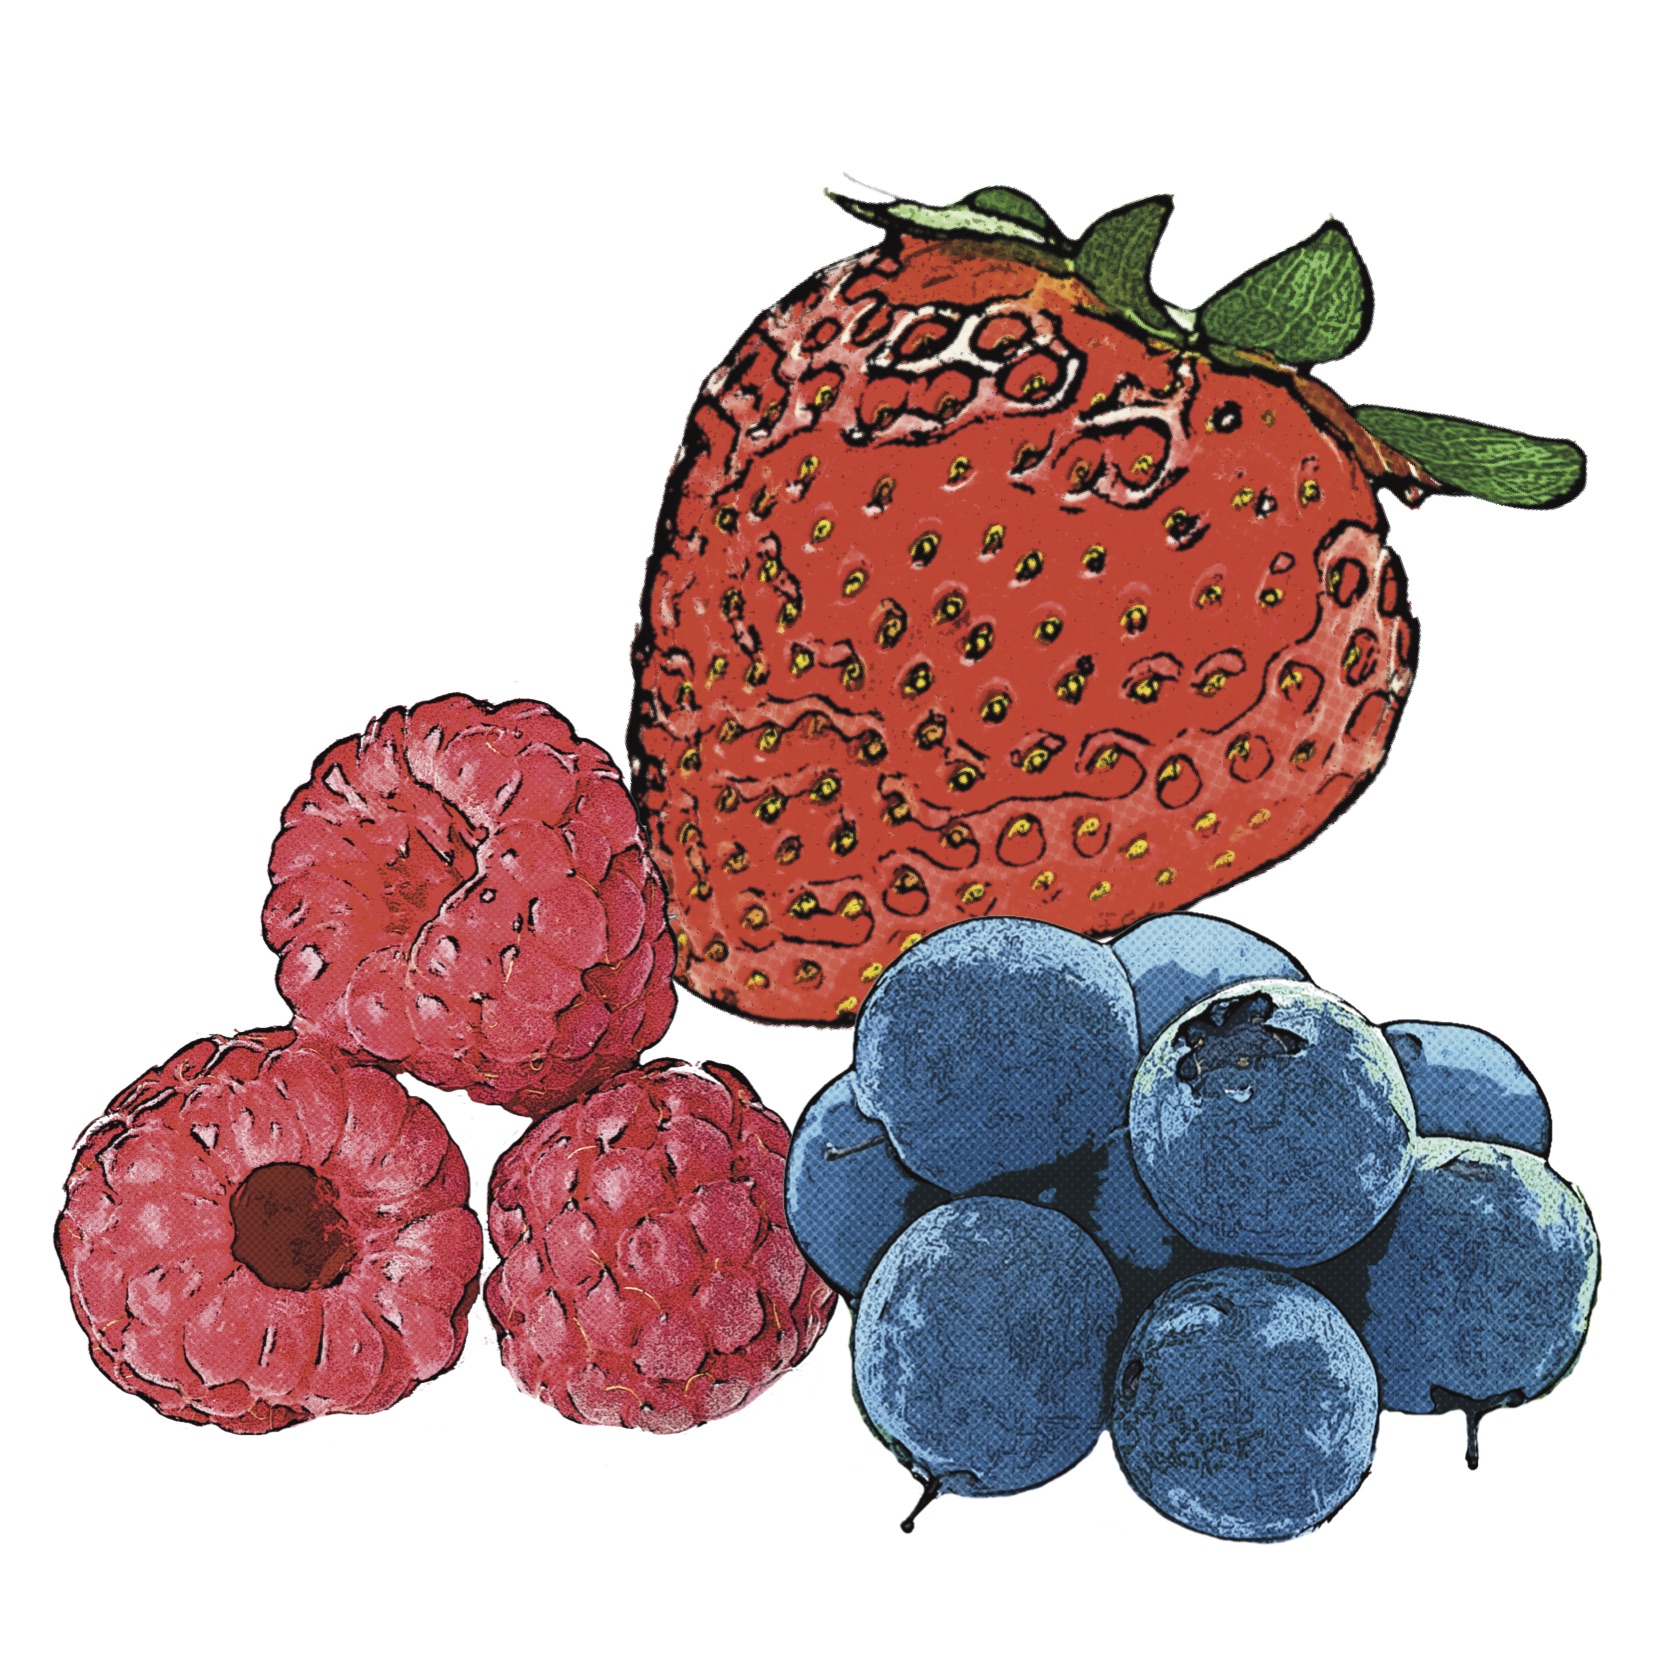 strawberries, blueberries, raspberries